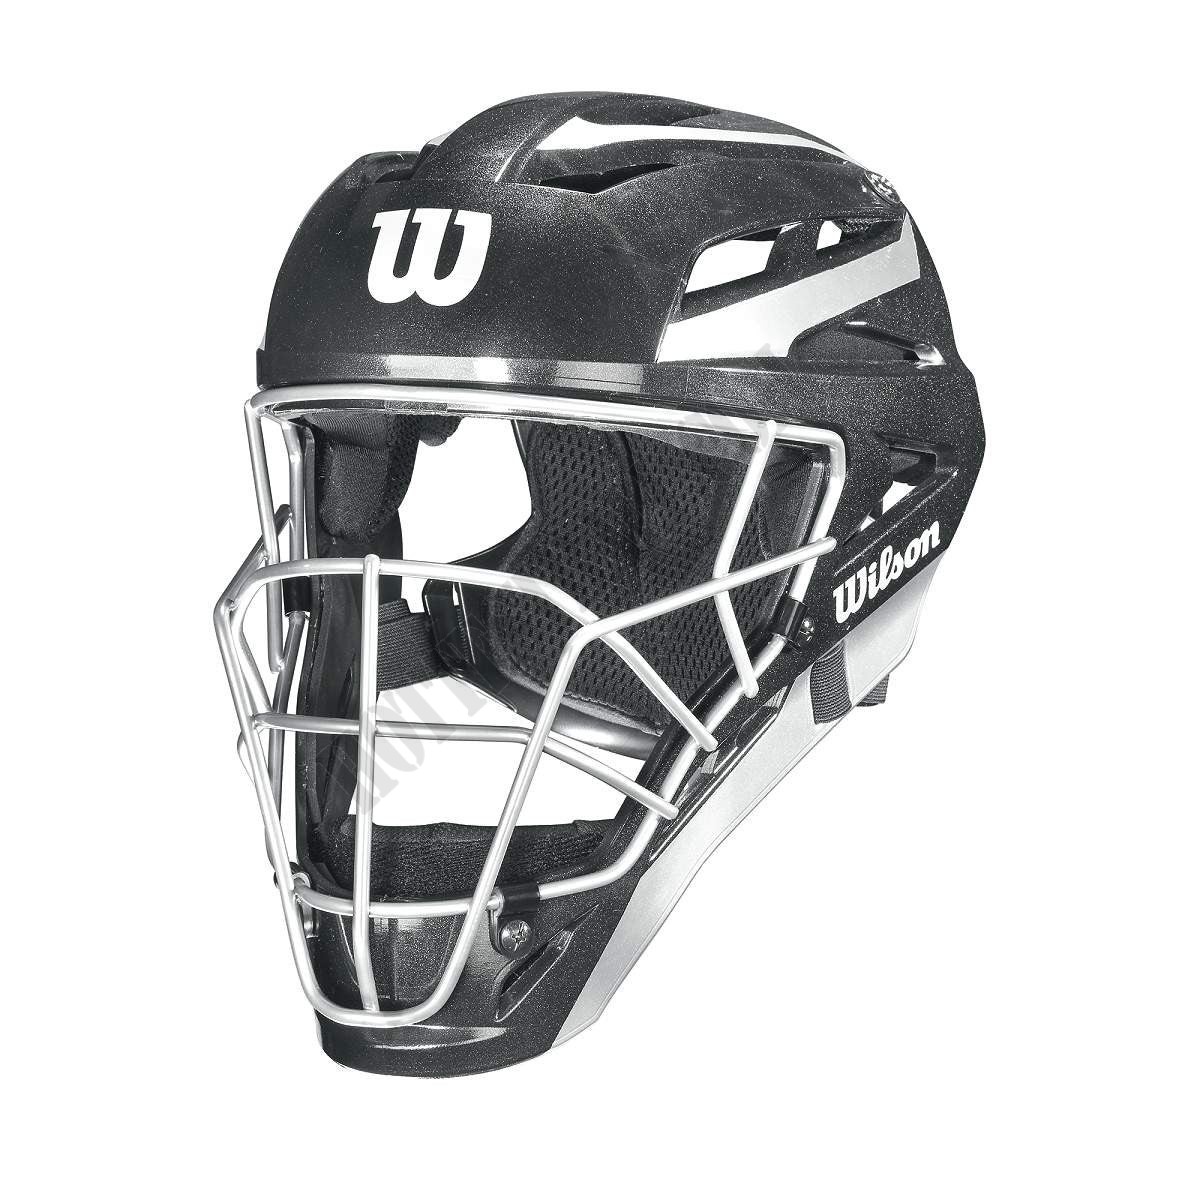 Pro Stock Catcher's Helmet - Wilson Discount Store - Pro Stock Catcher's Helmet - Wilson Discount Store